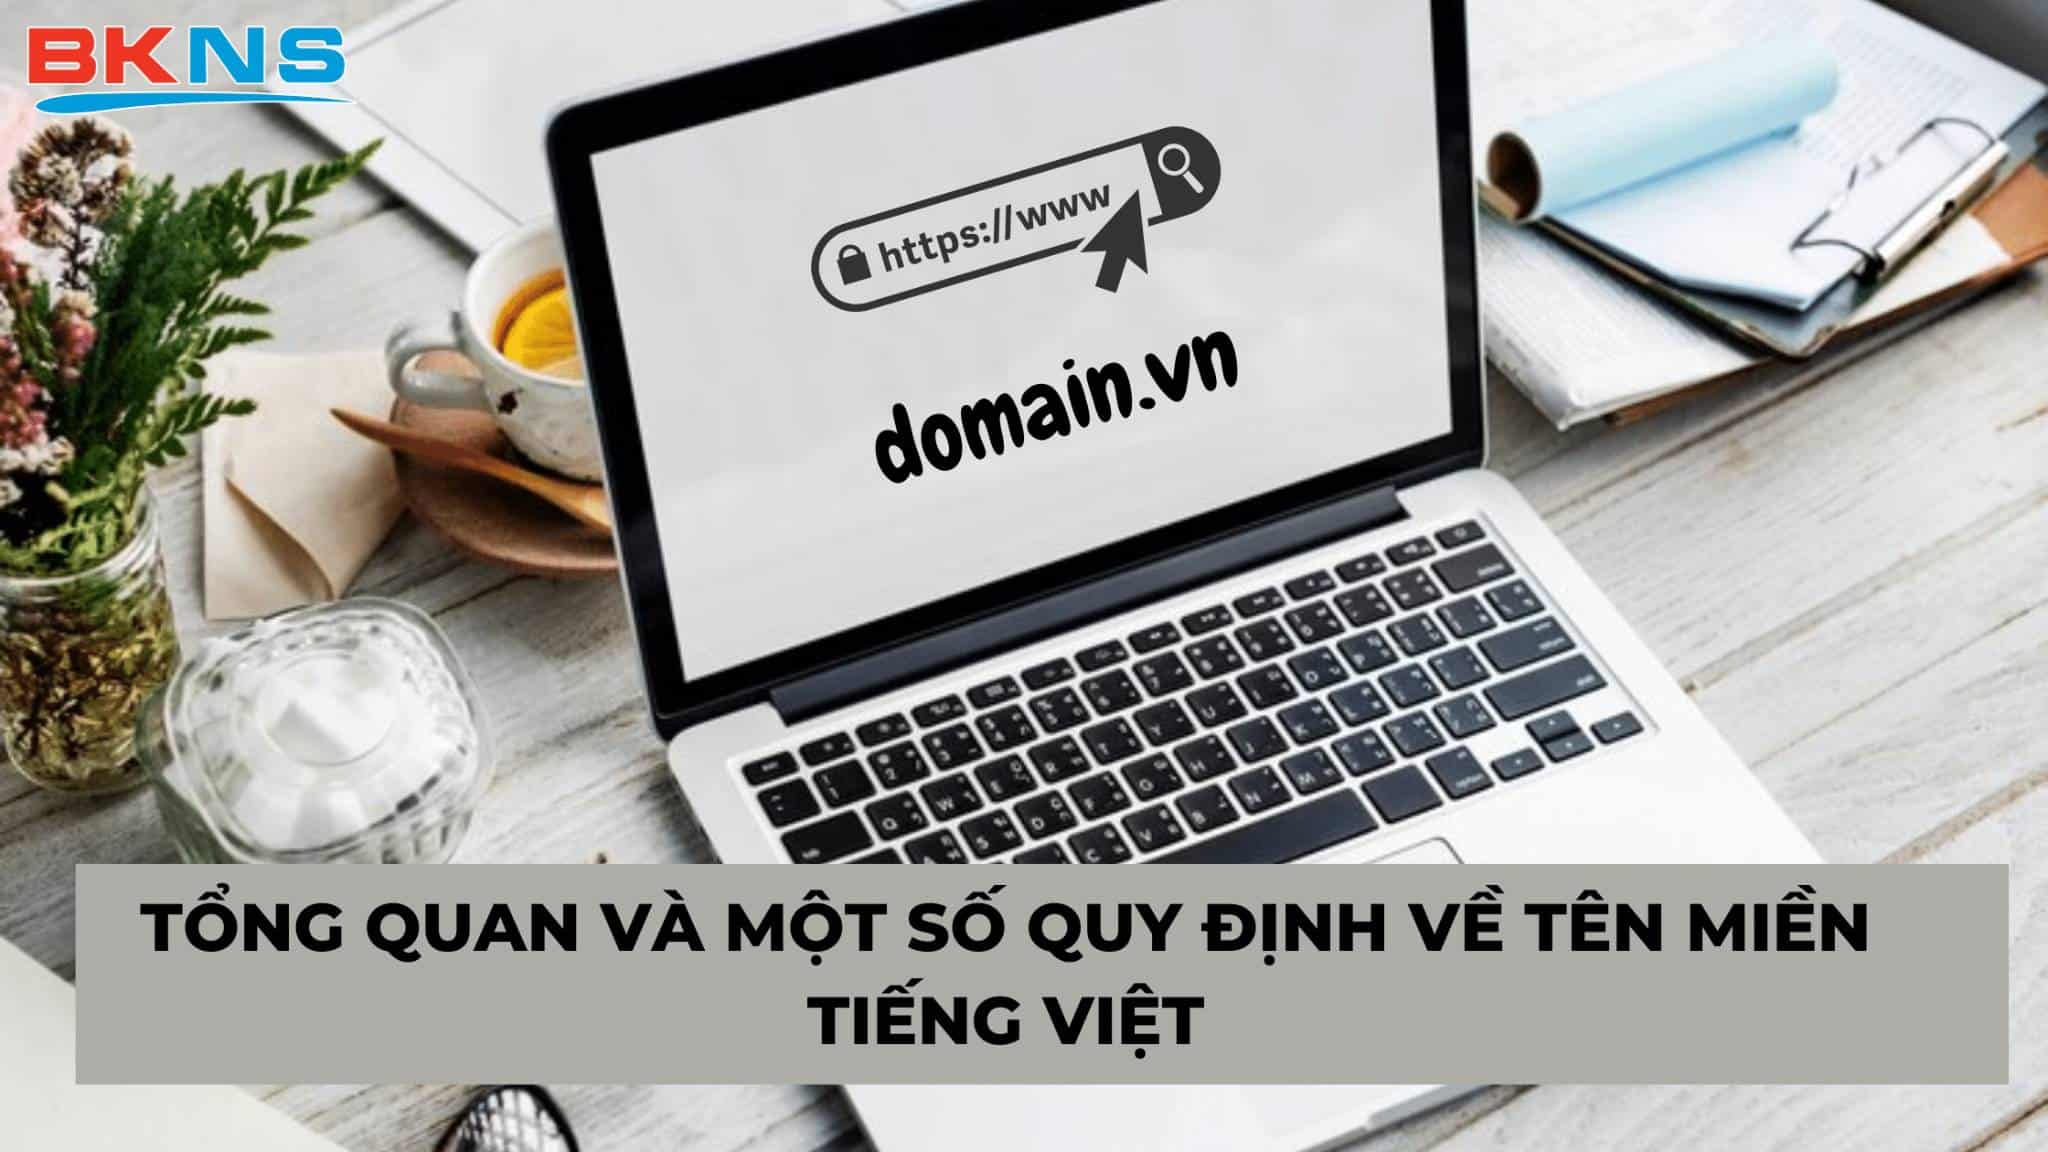 Giới thiệu tổng quan và một số quy định về tên miền Tiếng Việt